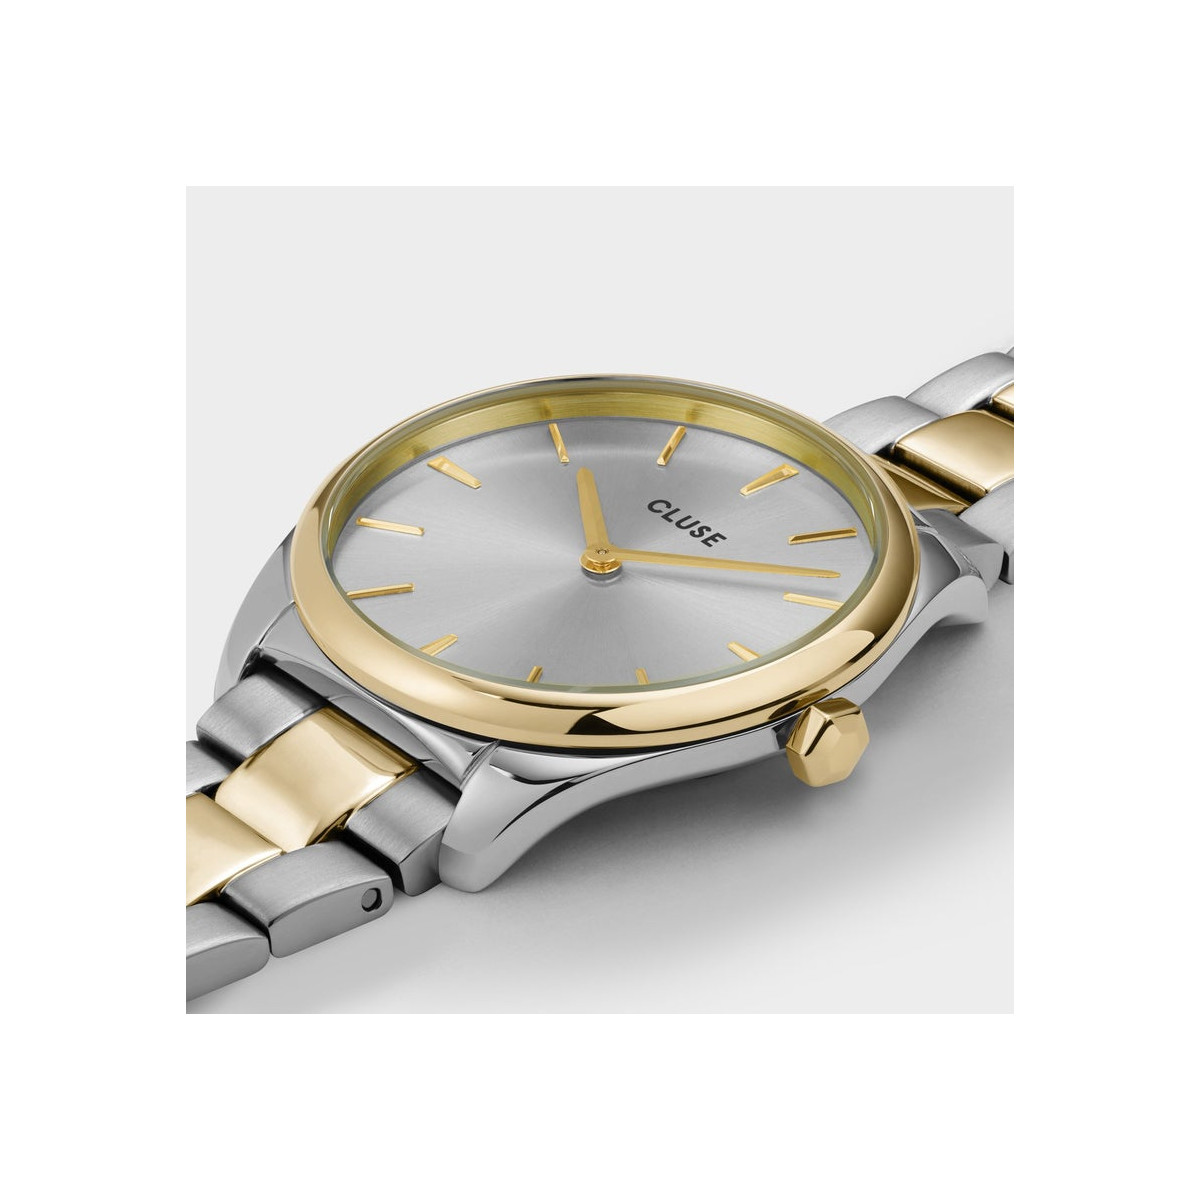 Reloj de mujer CW11207 de acero bicolor